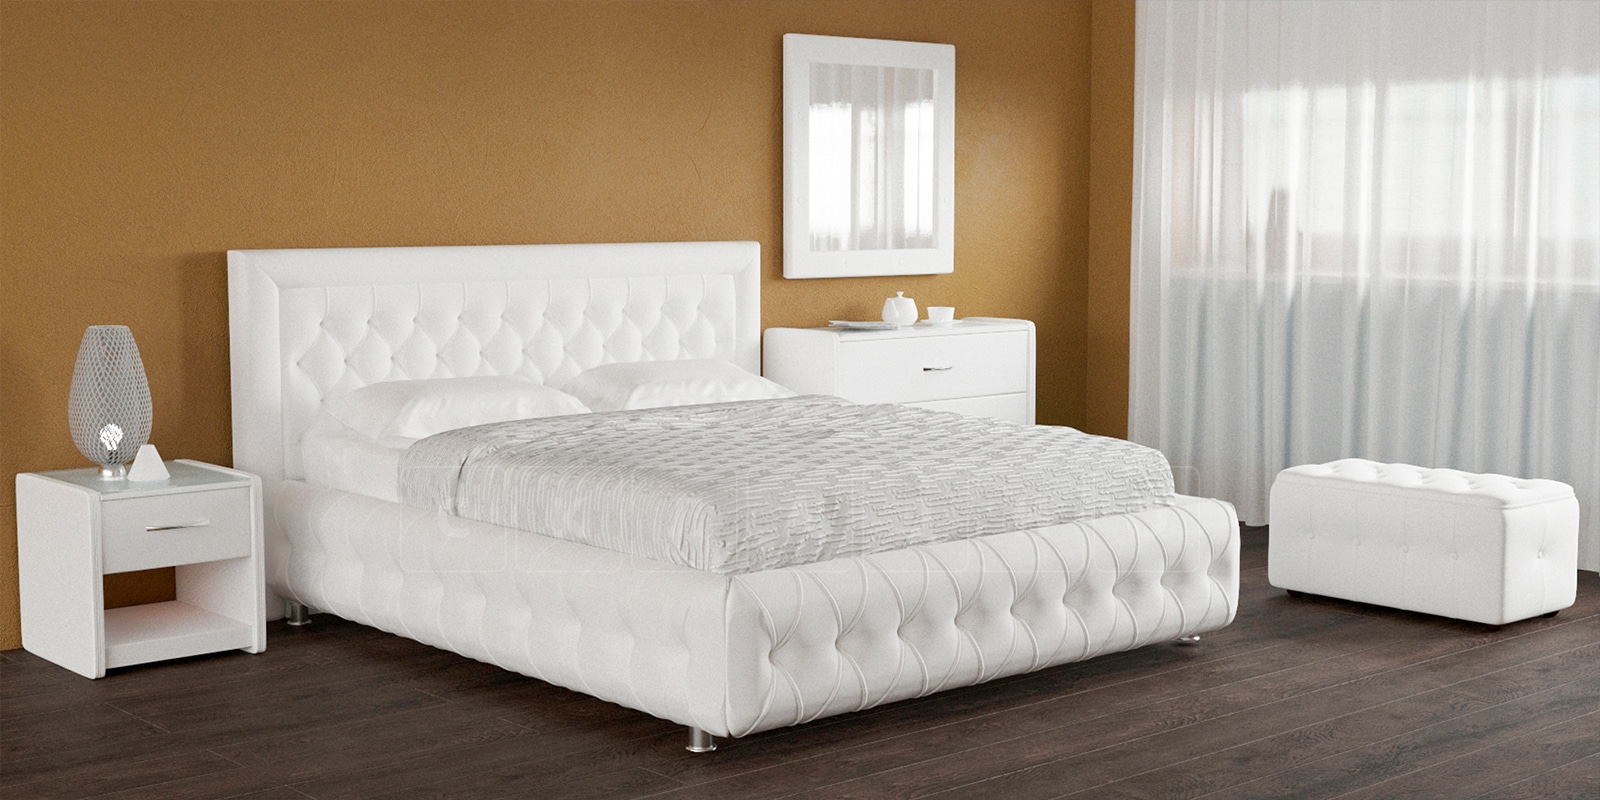 Мягкая кровать Малибу 160см экокожа белого цвета вариант 7 фото 5 | интернет-магазин Складно